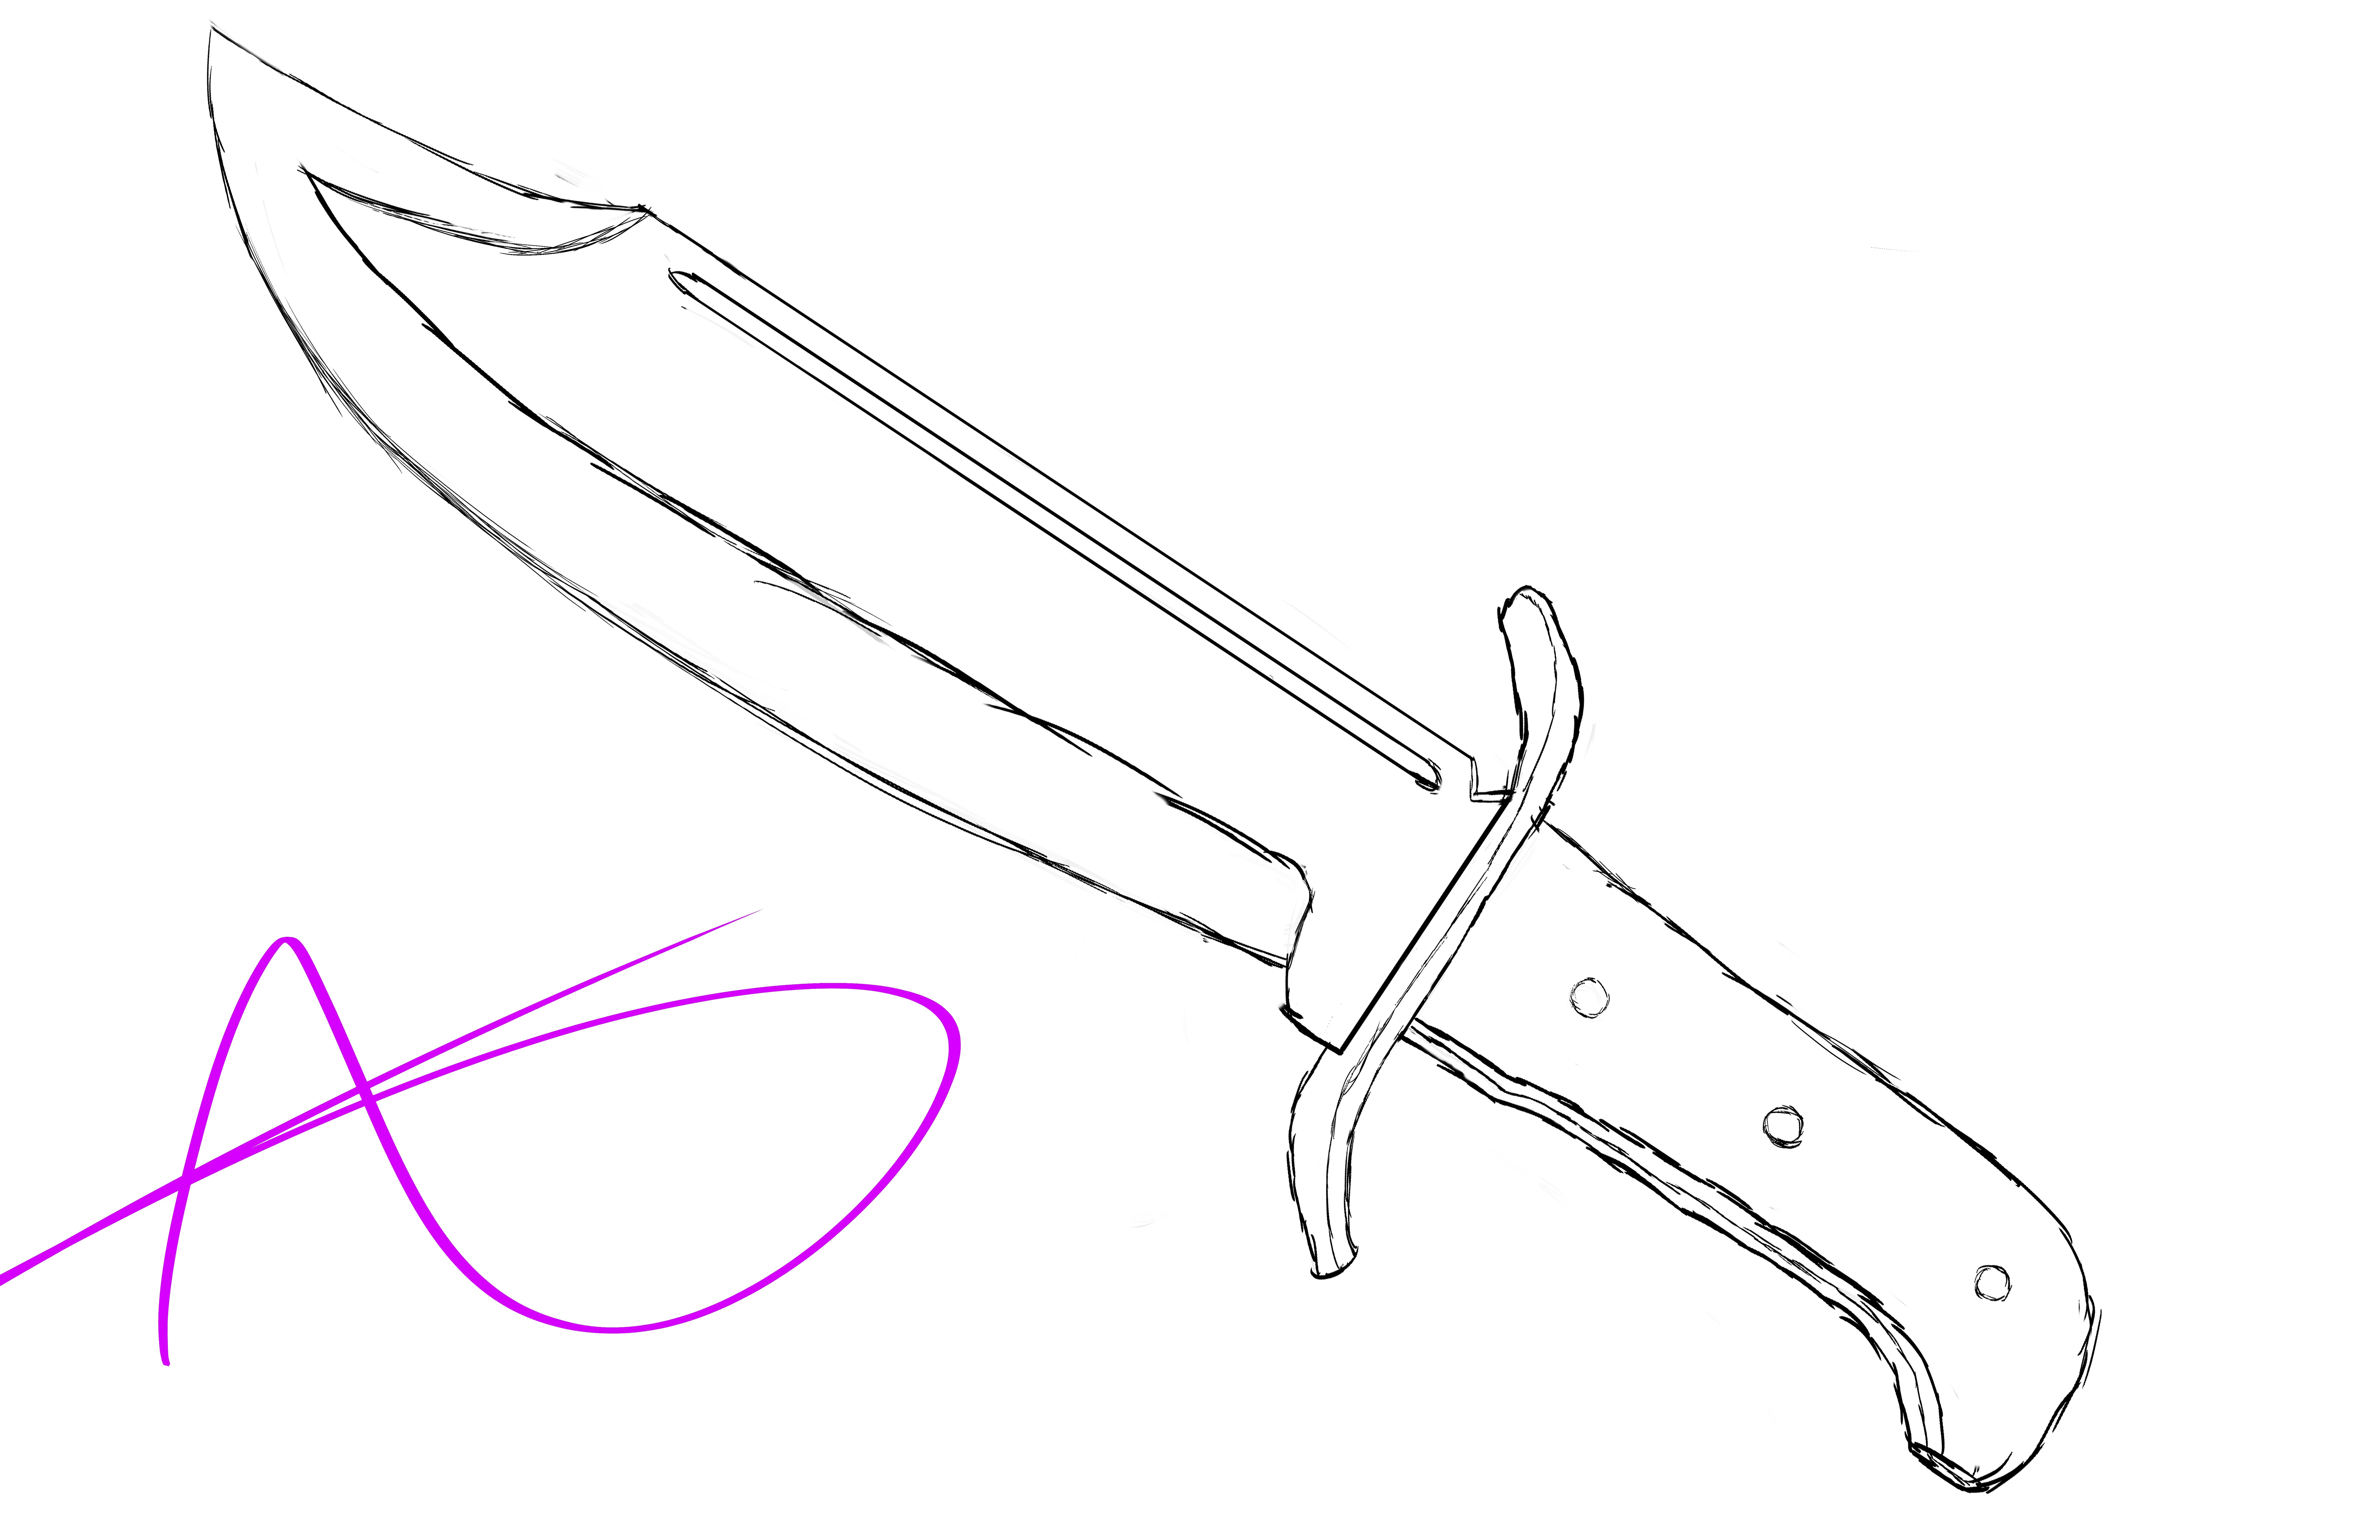 Нож поэтапно. Нож Боуи чертеж. Нож Боуи КС го чертеж. Ножи из КС го чертежи Боуи нож. Охотничьи ножи Боуи чертеж.